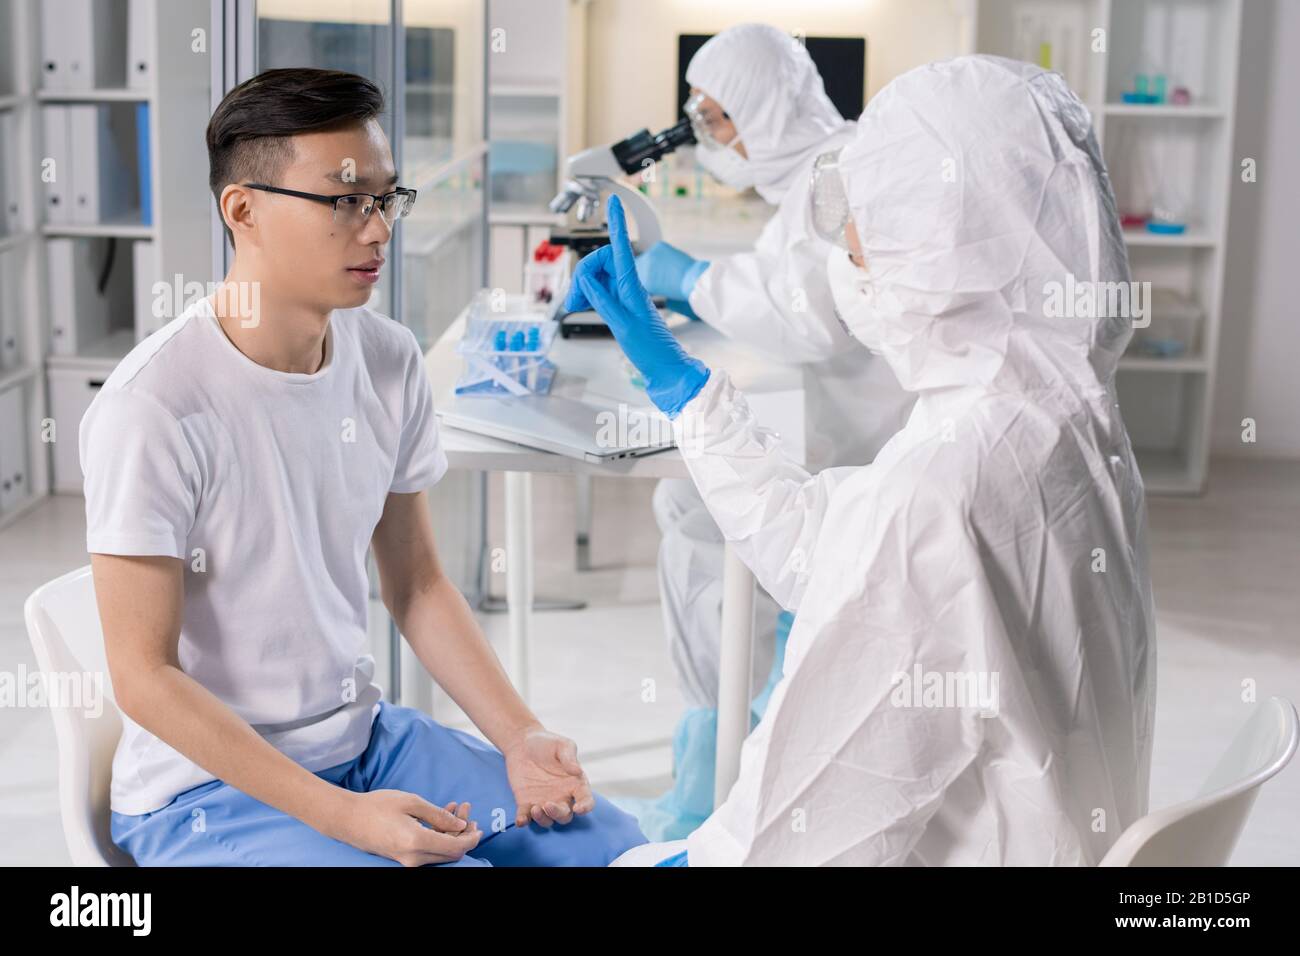 Spécialiste médical en costume protecteur montrant le doigt au patient asiatique infecté tout en vérifiant sa réaction Banque D'Images